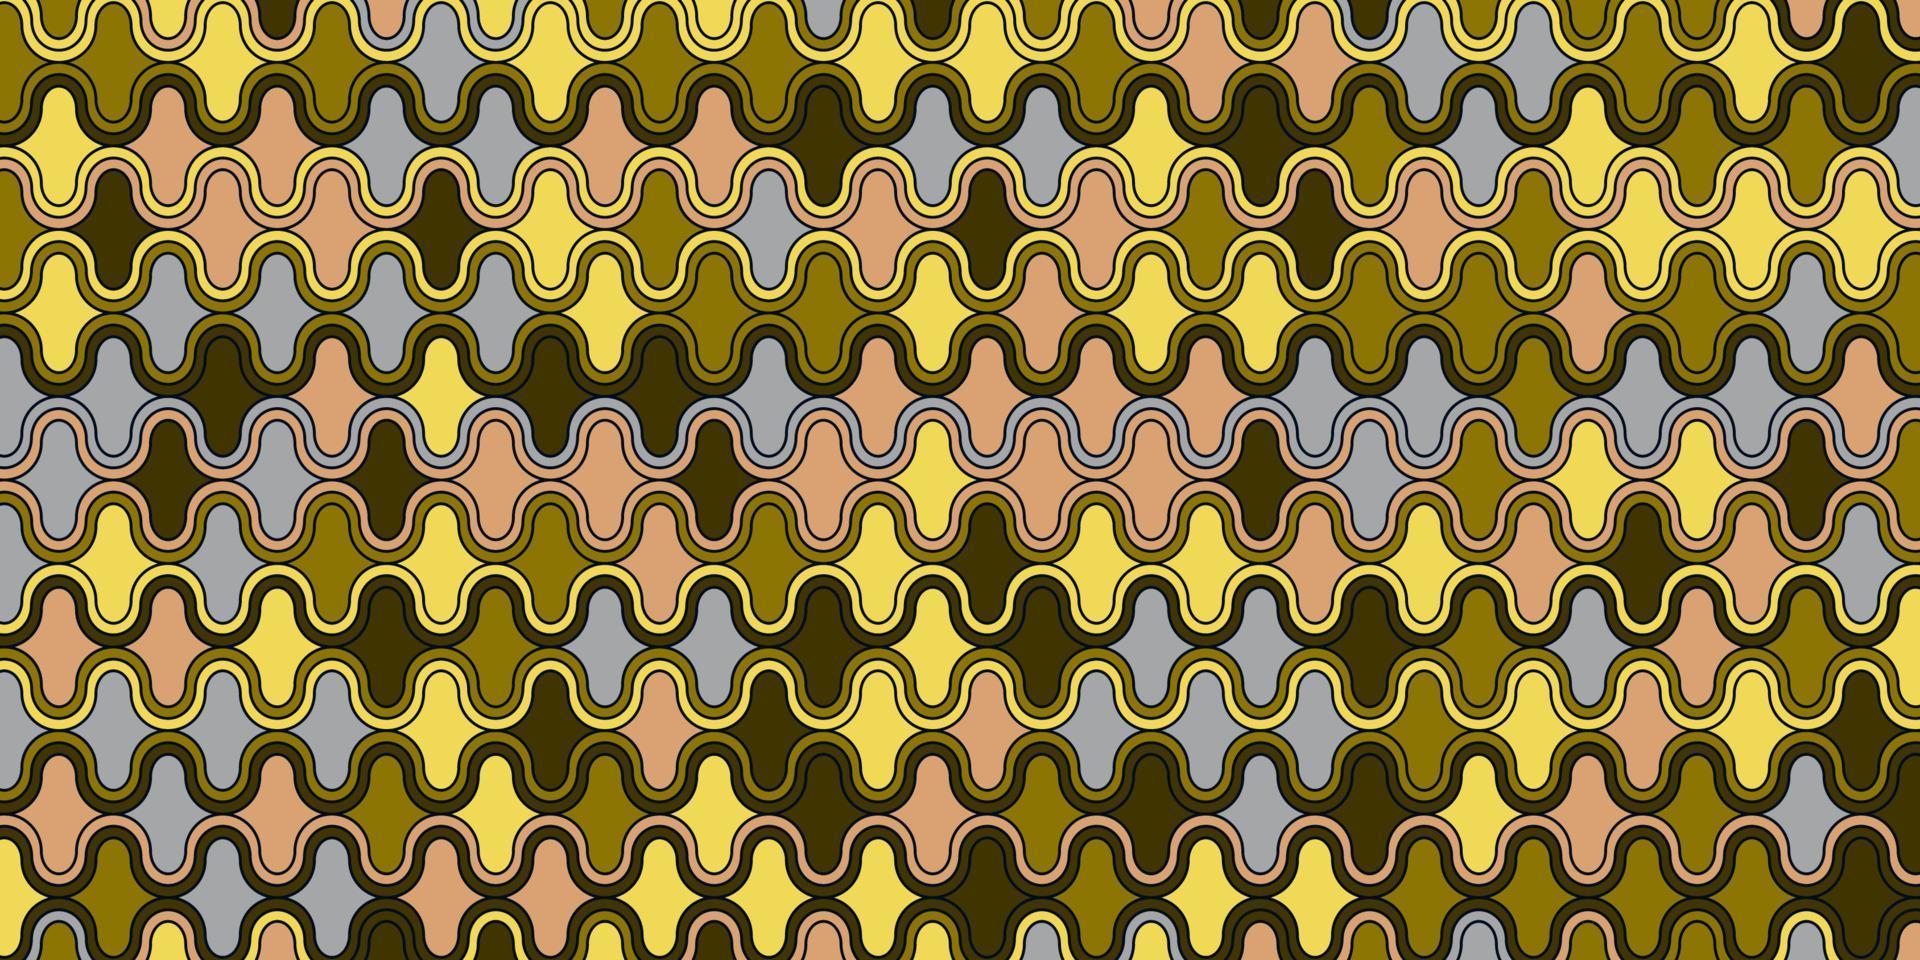 geometrisch patroon met golfkromme lijnen retro stijl vector